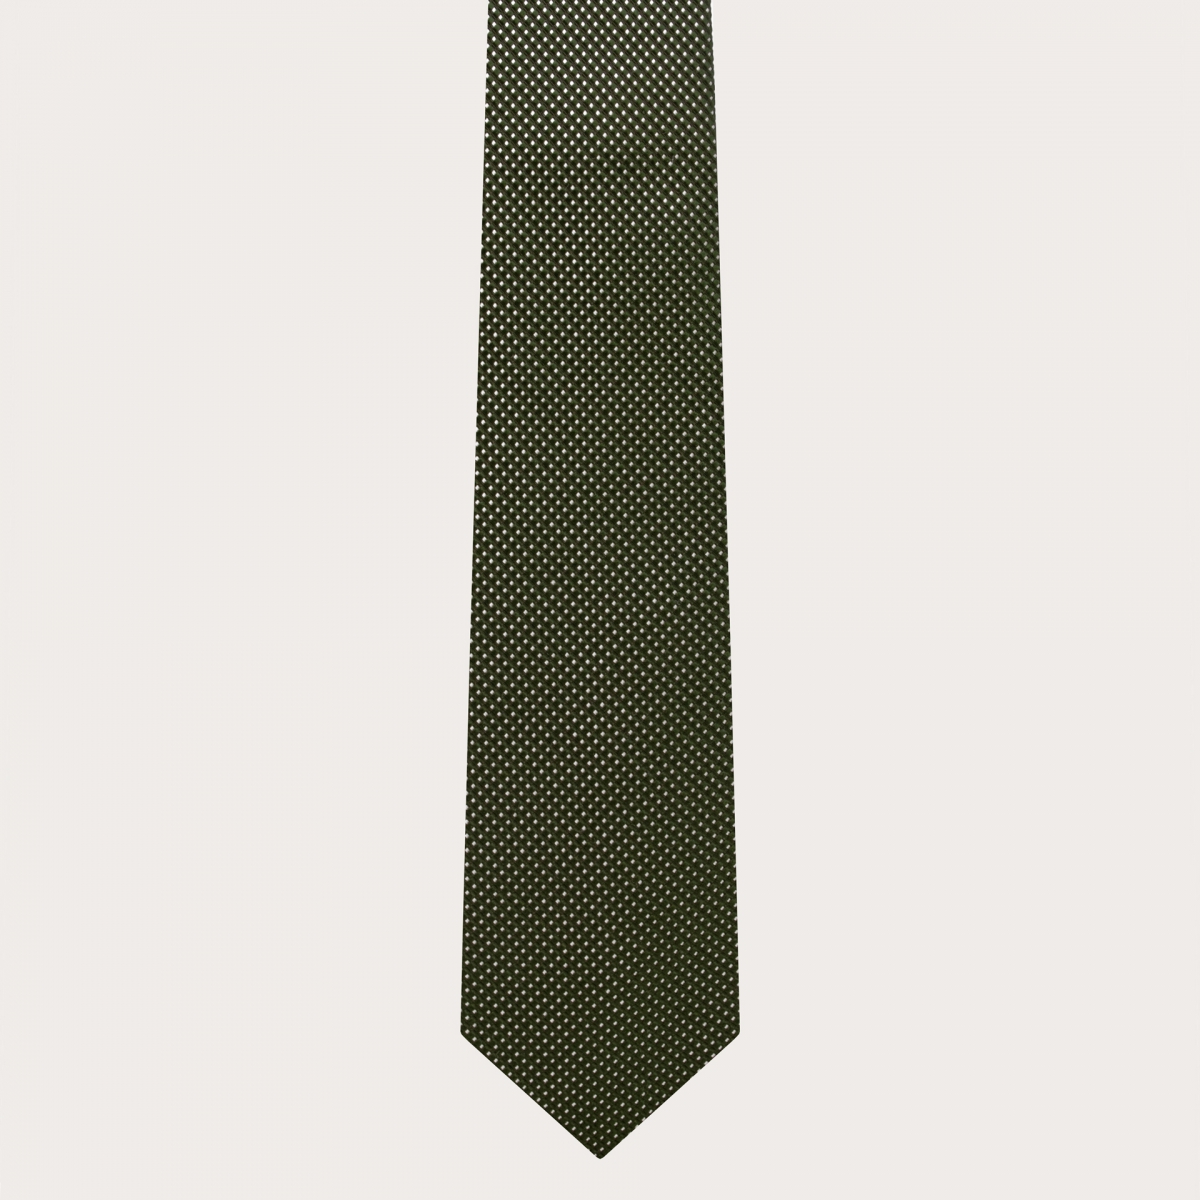 BRUCLE Cravate élégante en soie verte à pois